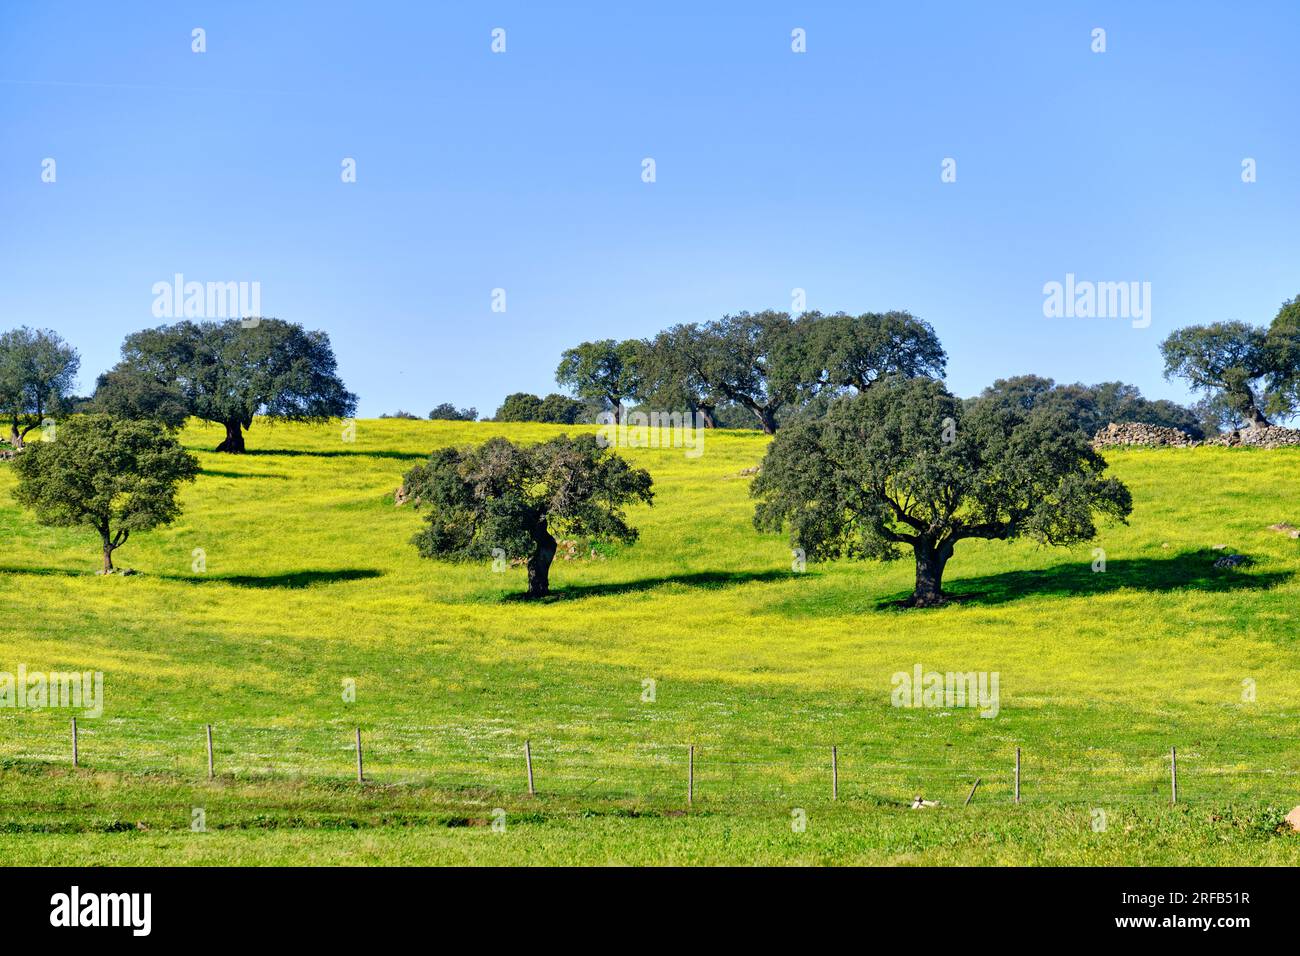 Holm oaks in Spring. Monforte, Alentejo. Portugal Stock Photo